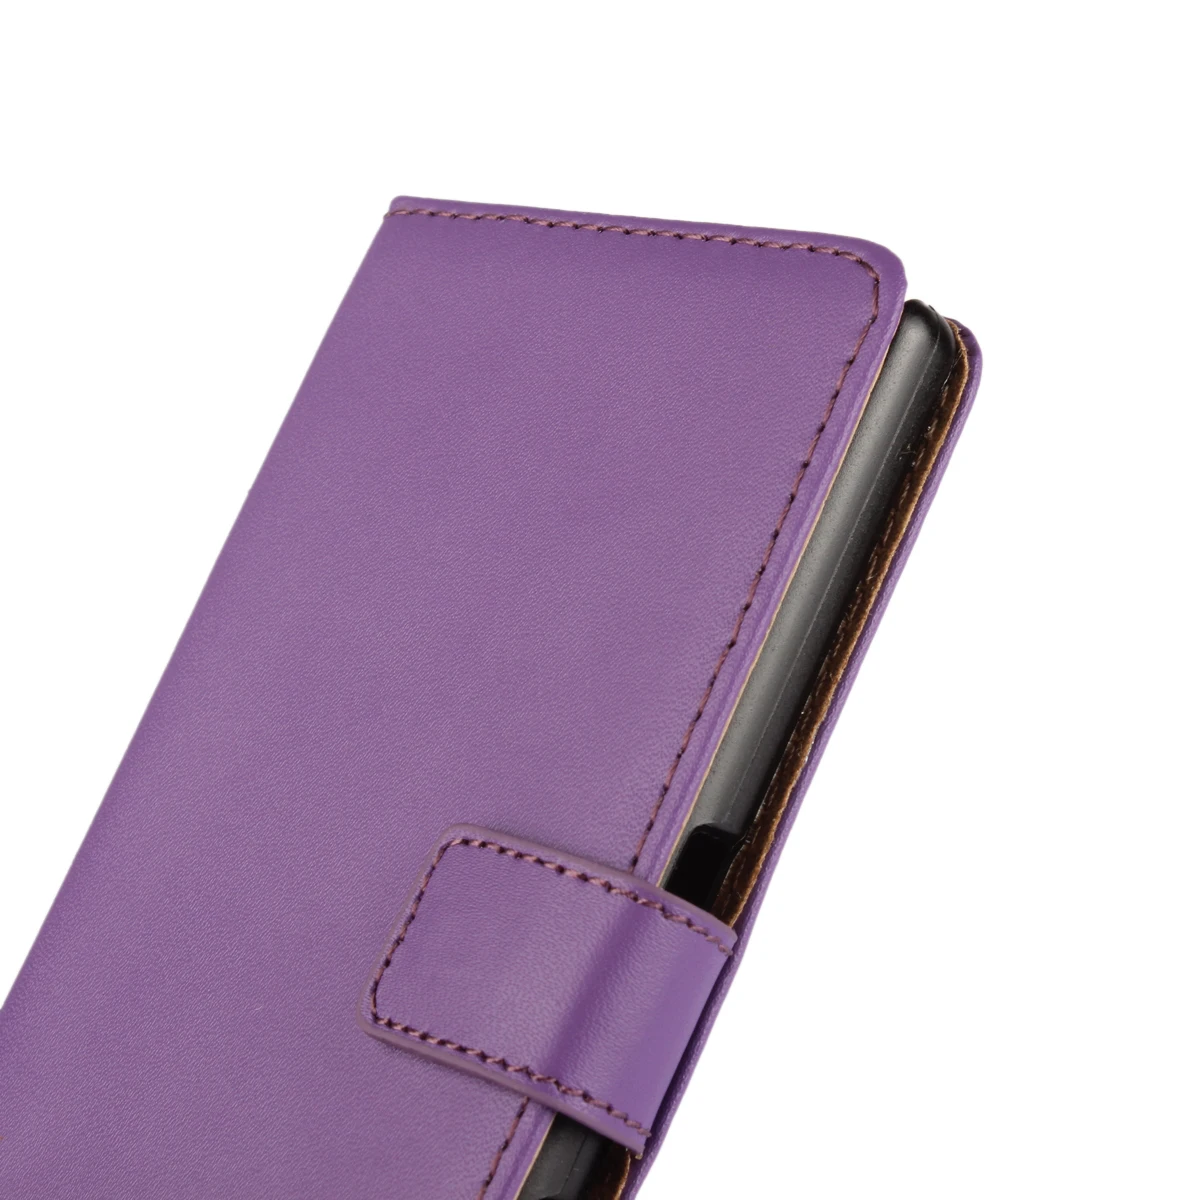 Чехол-книжка из искусственной кожи, чехол-бумажник для sony Xperia Z5 Premium/Z5/Z5 Compact, держатель для карт, защитный чехол GG